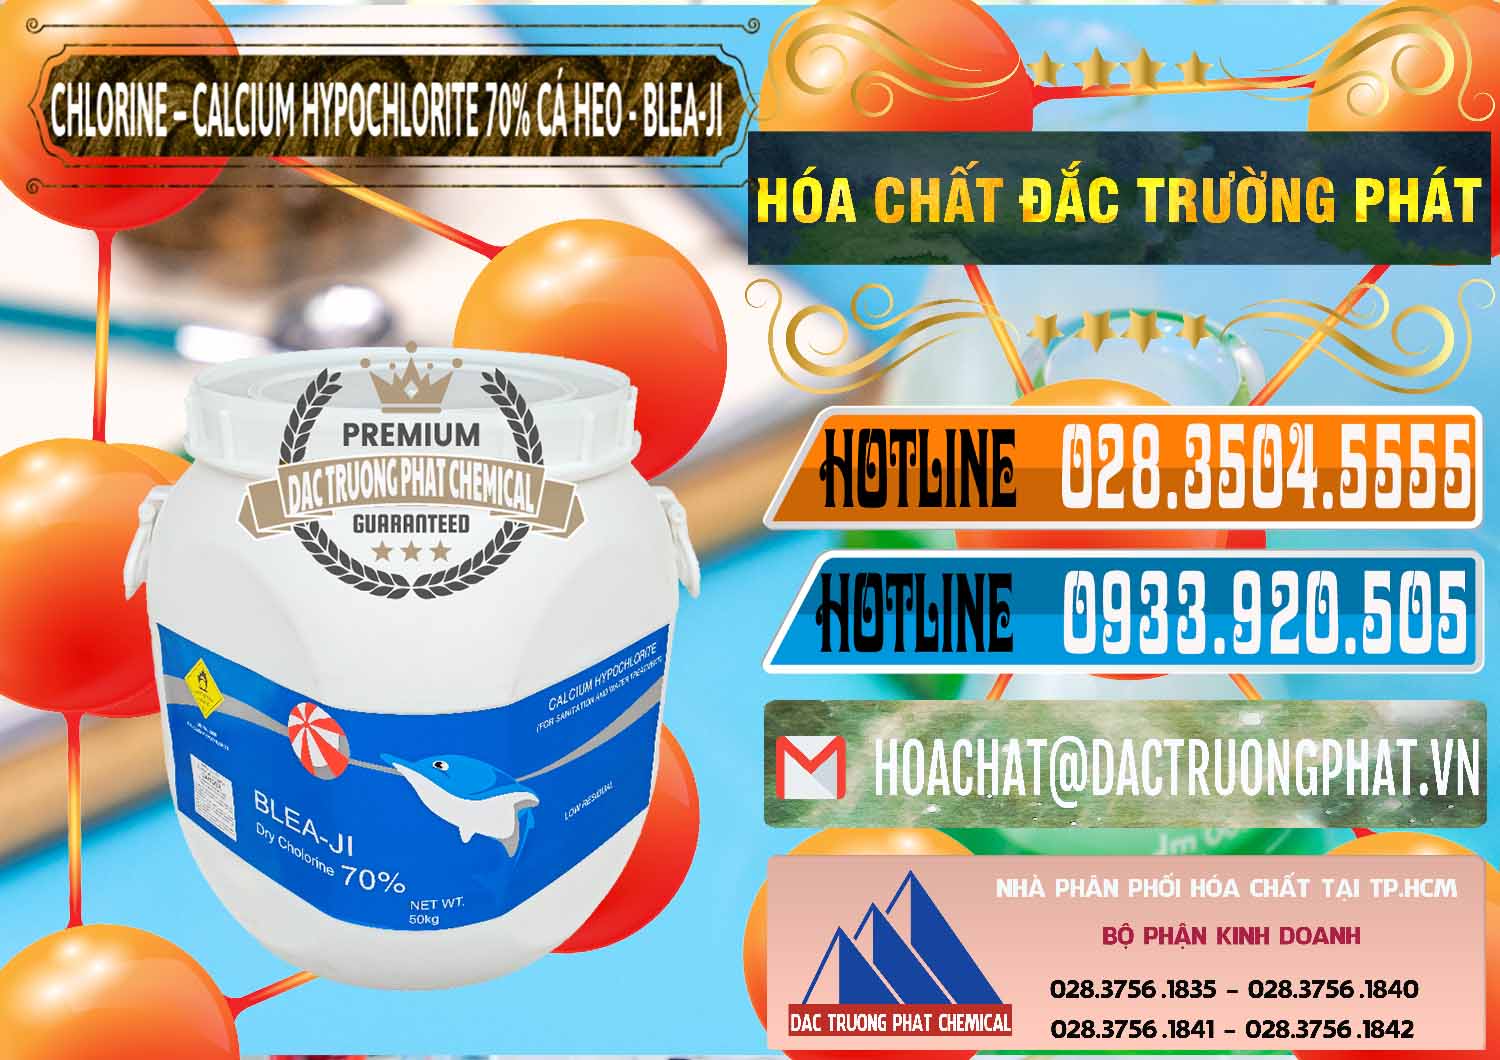 Cty chuyên nhập khẩu _ bán Clorin - Chlorine Cá Heo 70% Blea-Ji Trung Quốc China - 0056 - Cty nhập khẩu & phân phối hóa chất tại TP.HCM - stmp.net